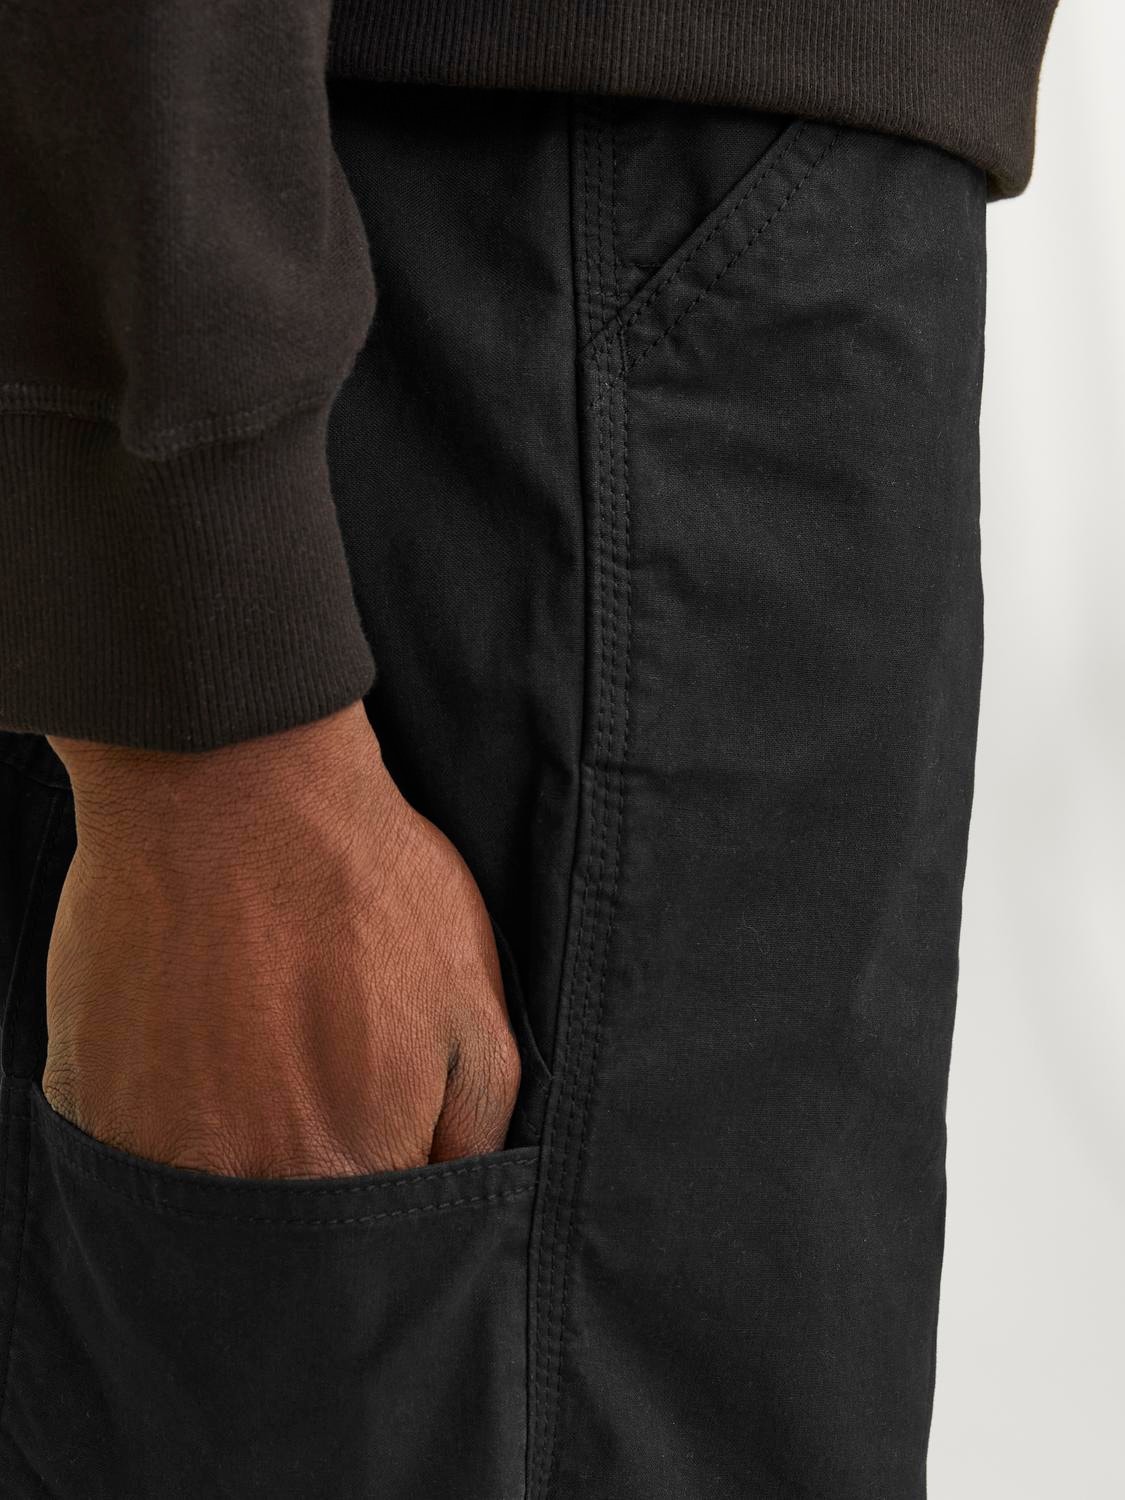 Jack & Jones Short à cinq poches Regular Fit -Black - 12232118